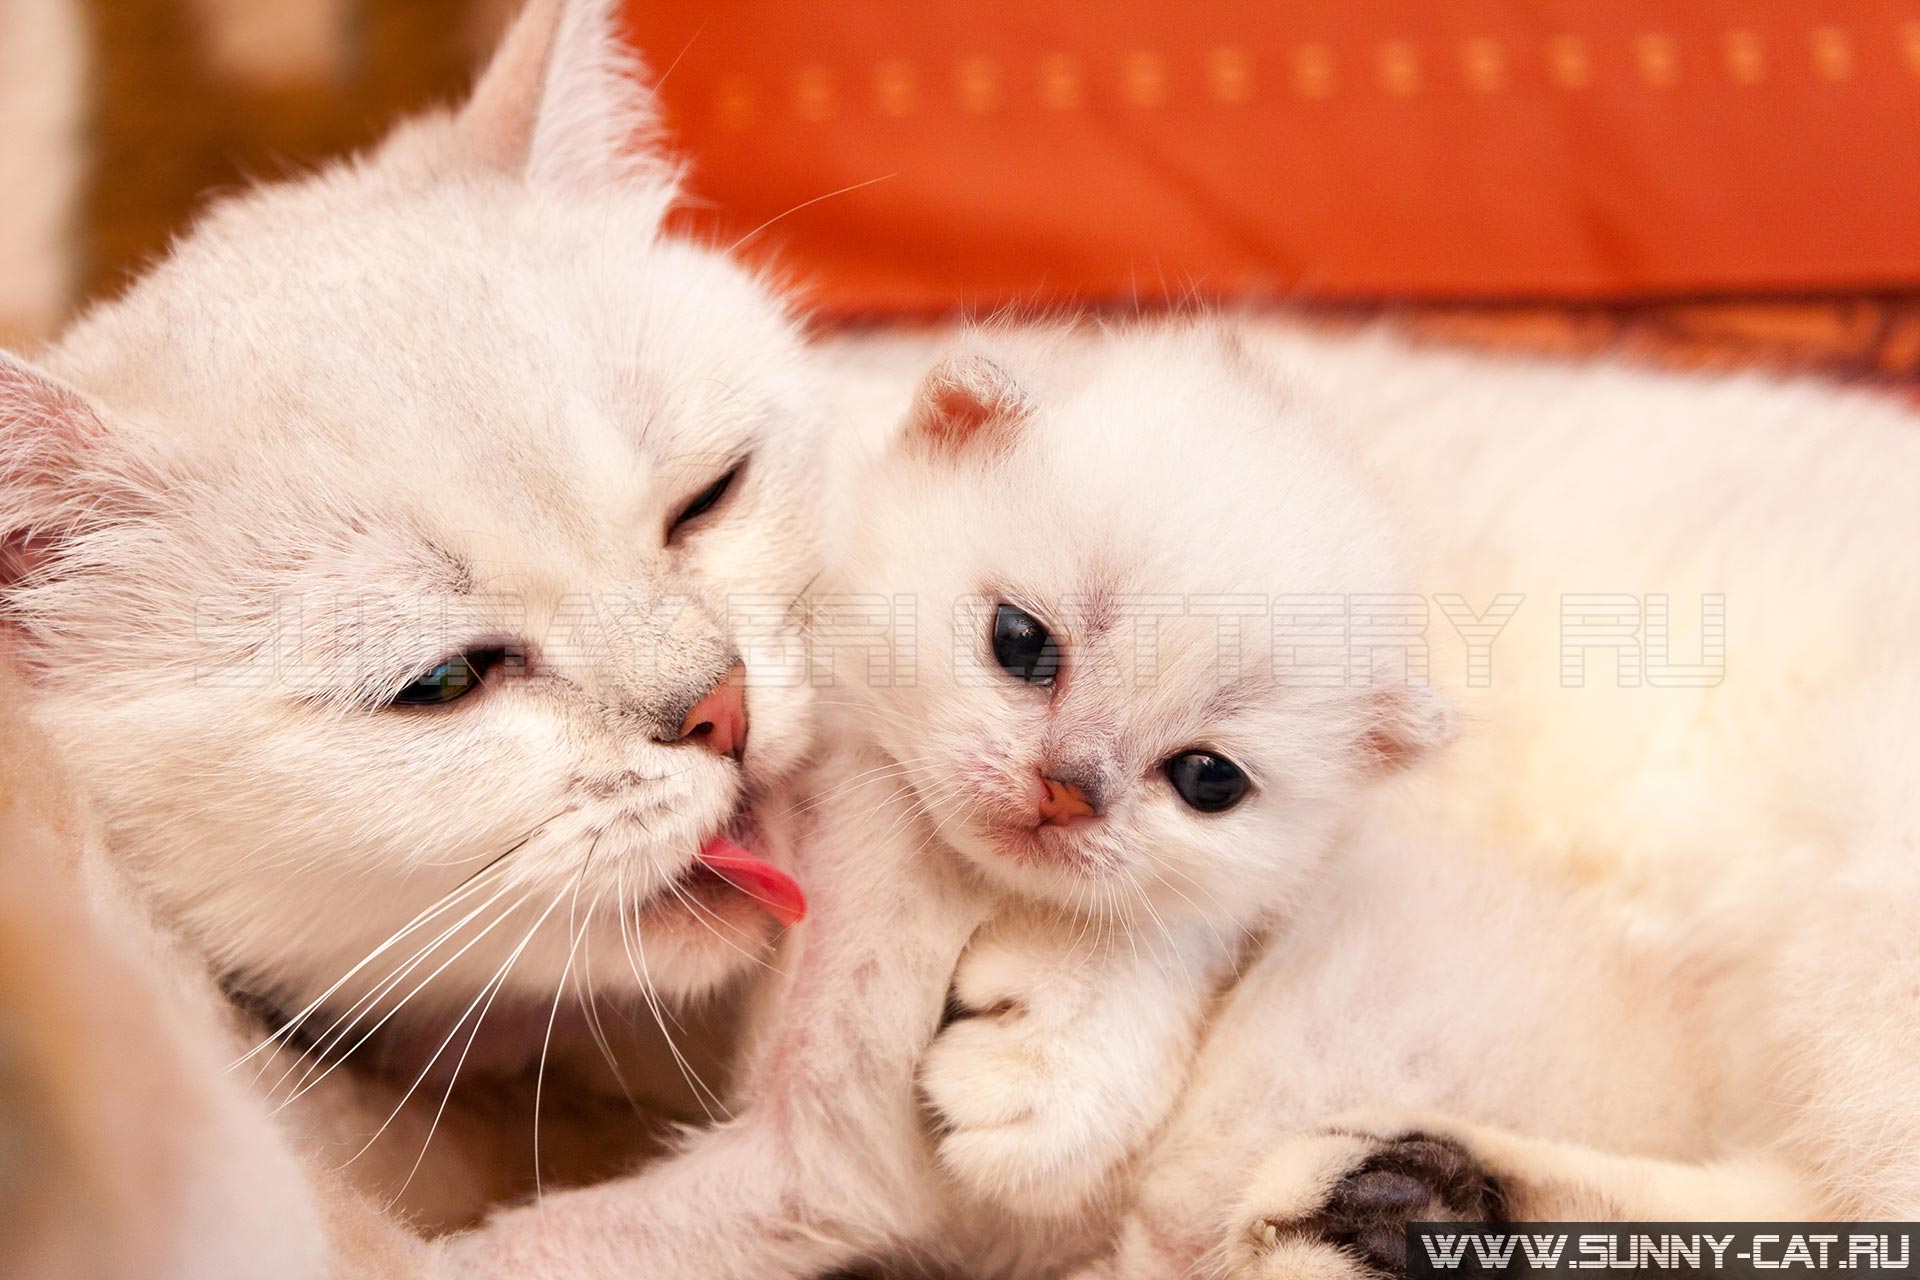 Белая британская кошка мама обнимает и вылизывает своего маленького малыша котенка, котенок обнимается со своей мамой.